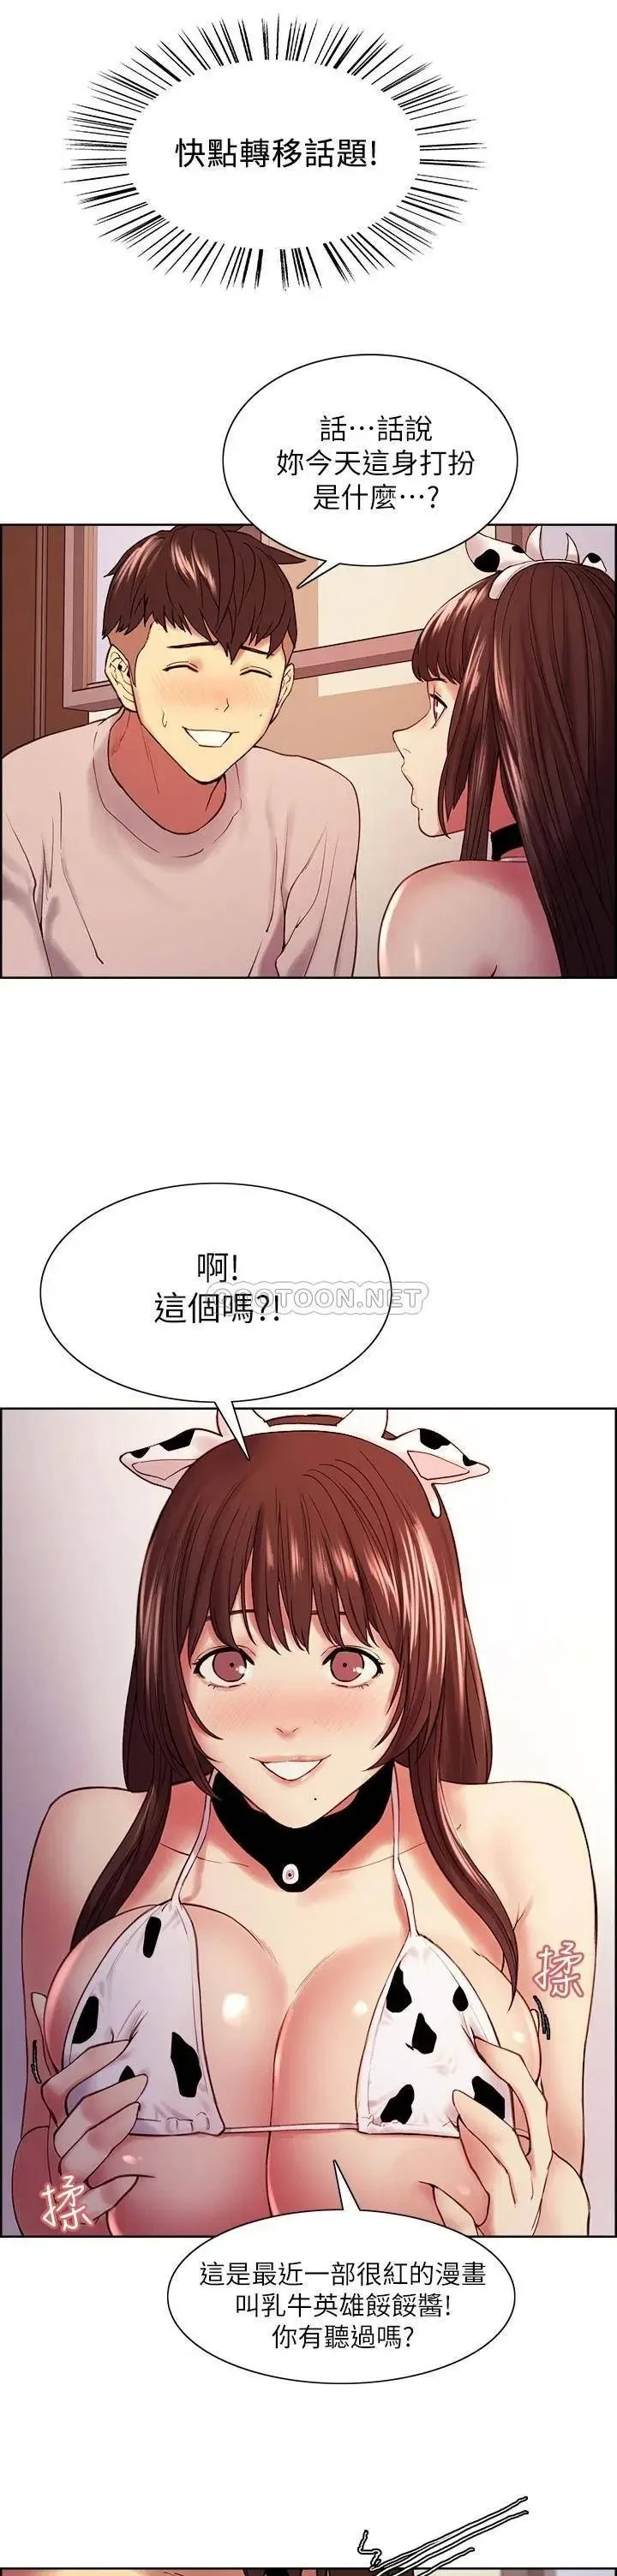 《室友招募中》漫画 第56话 熙妍想要的特别奖励